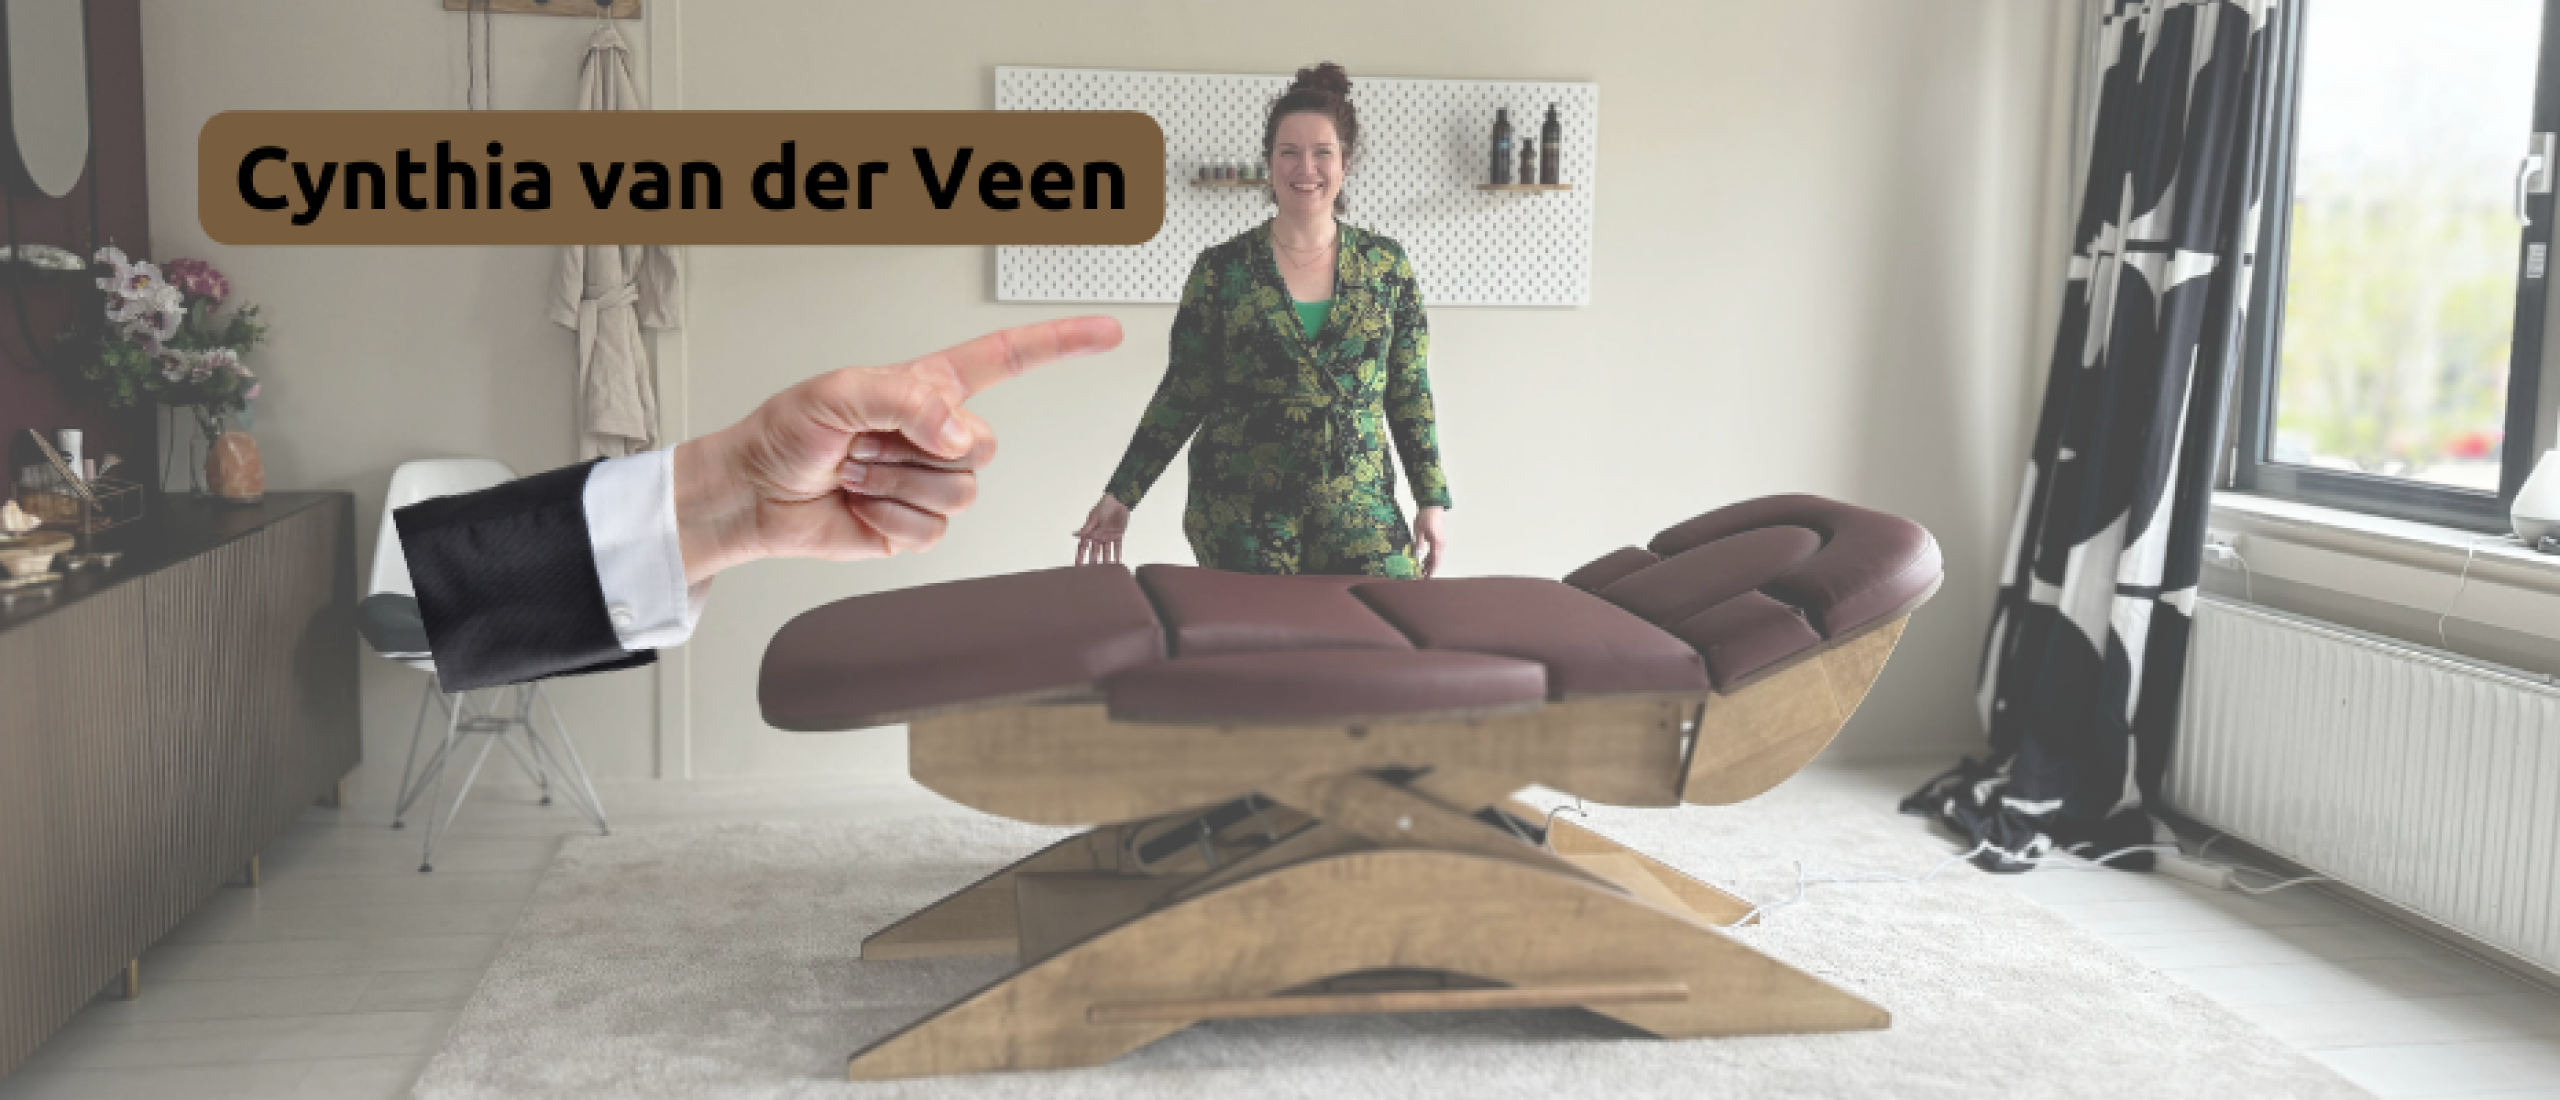 Cynthia van der Veen en de Relax Sensation PRO